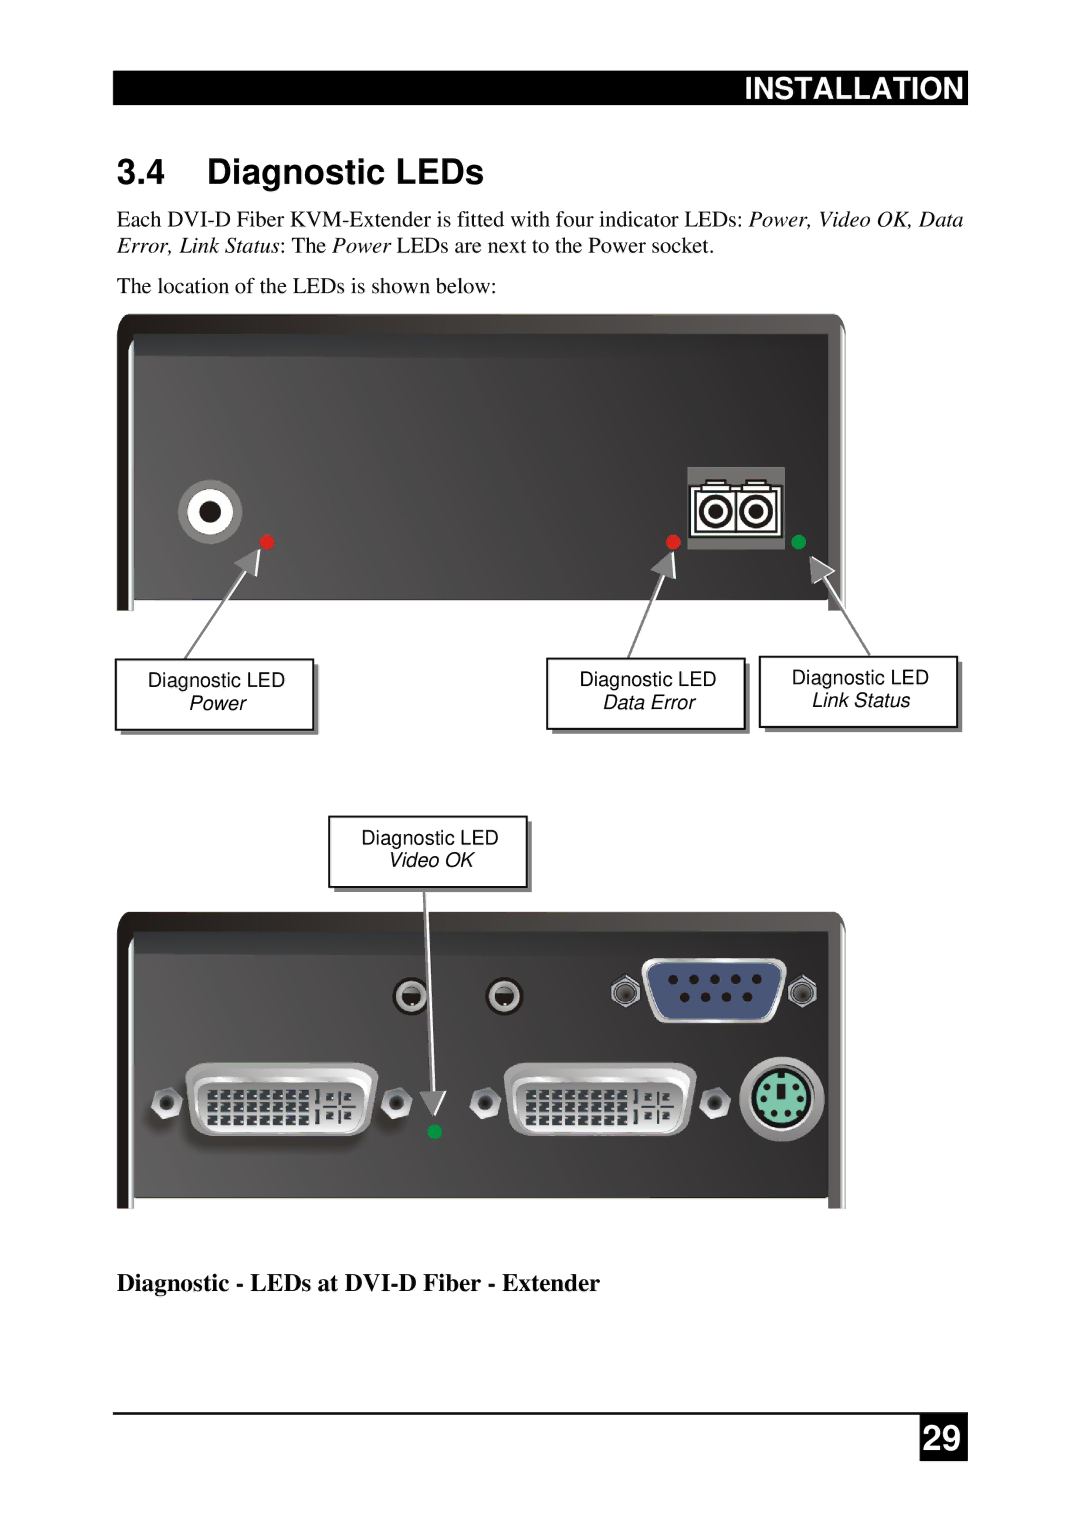 Black Box DVI-D-Fiber-KVM-Extender Single and DualHead, ACS2009A-R2-xx manual Diagnostic LEDs at DVI-D Fiber Extender 